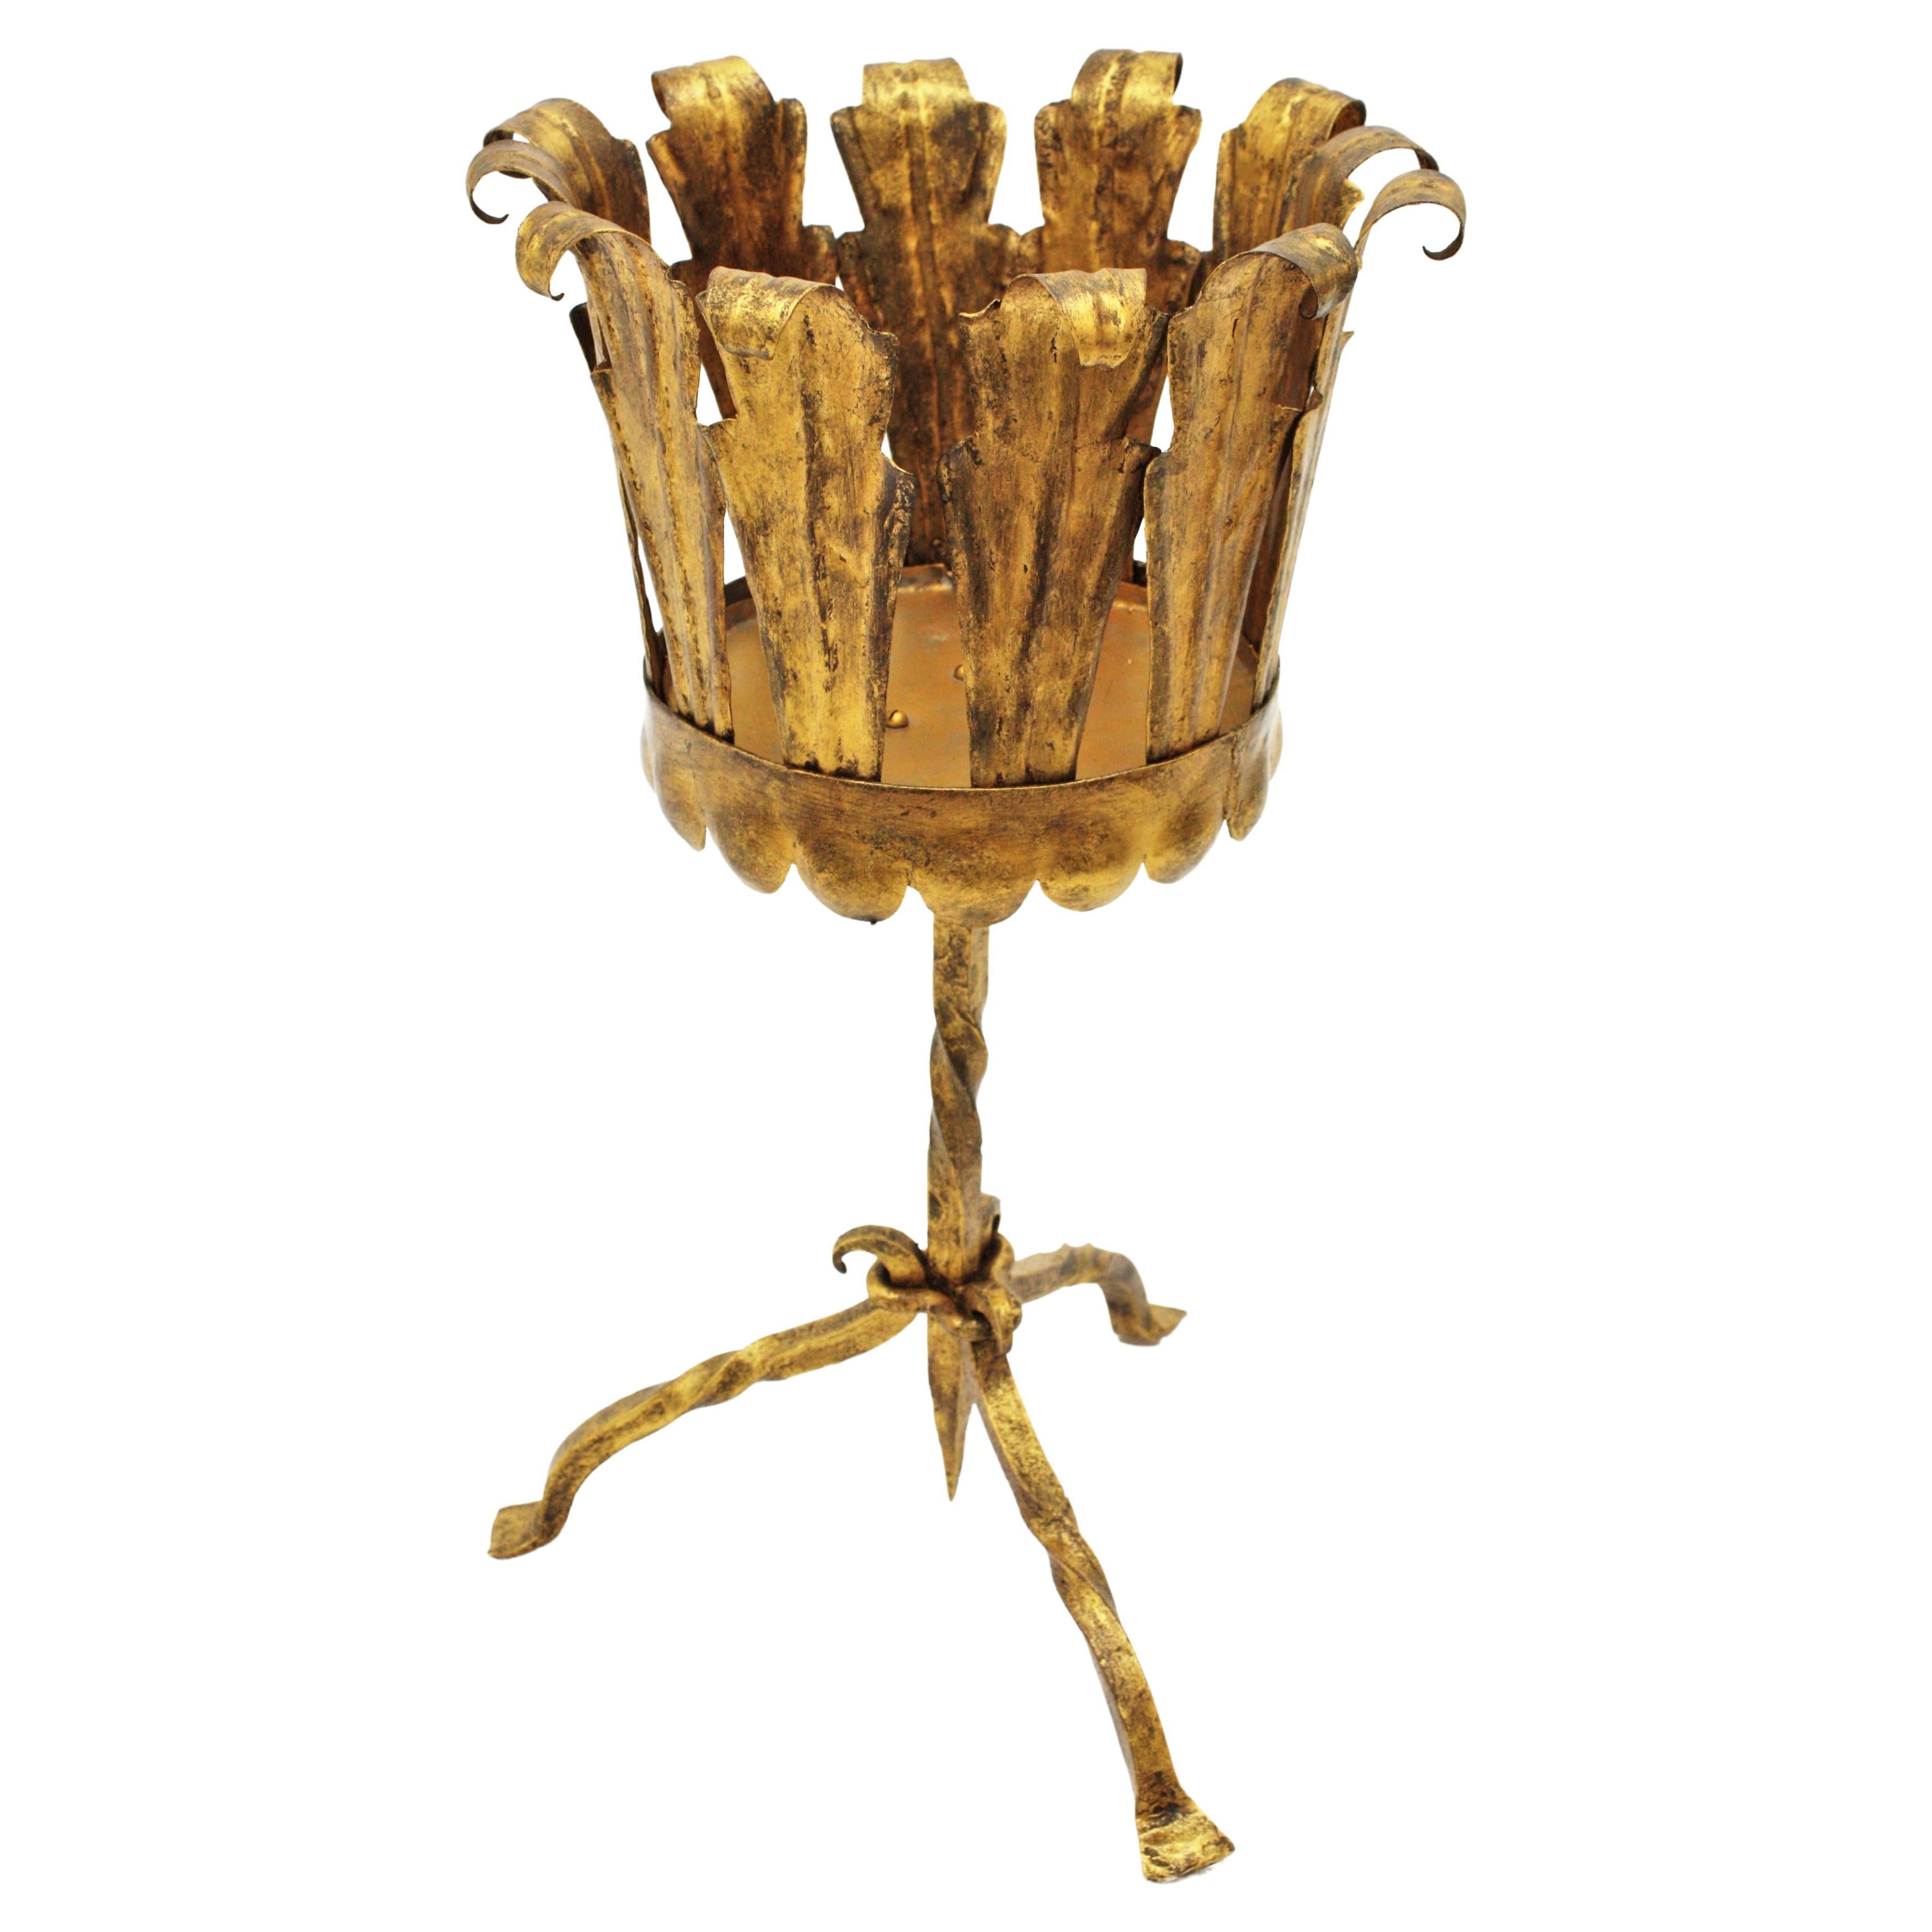 Jardinière de style gothique à feuilles en fer doré martelé à la main, fabriquée à l'époque du Mid-Century Modern, Espagne, 1950-1960.
Magnifique à placer dans un ensemble avec d'autres supports en fer doré ou des tables de guéridon.
Il peut être